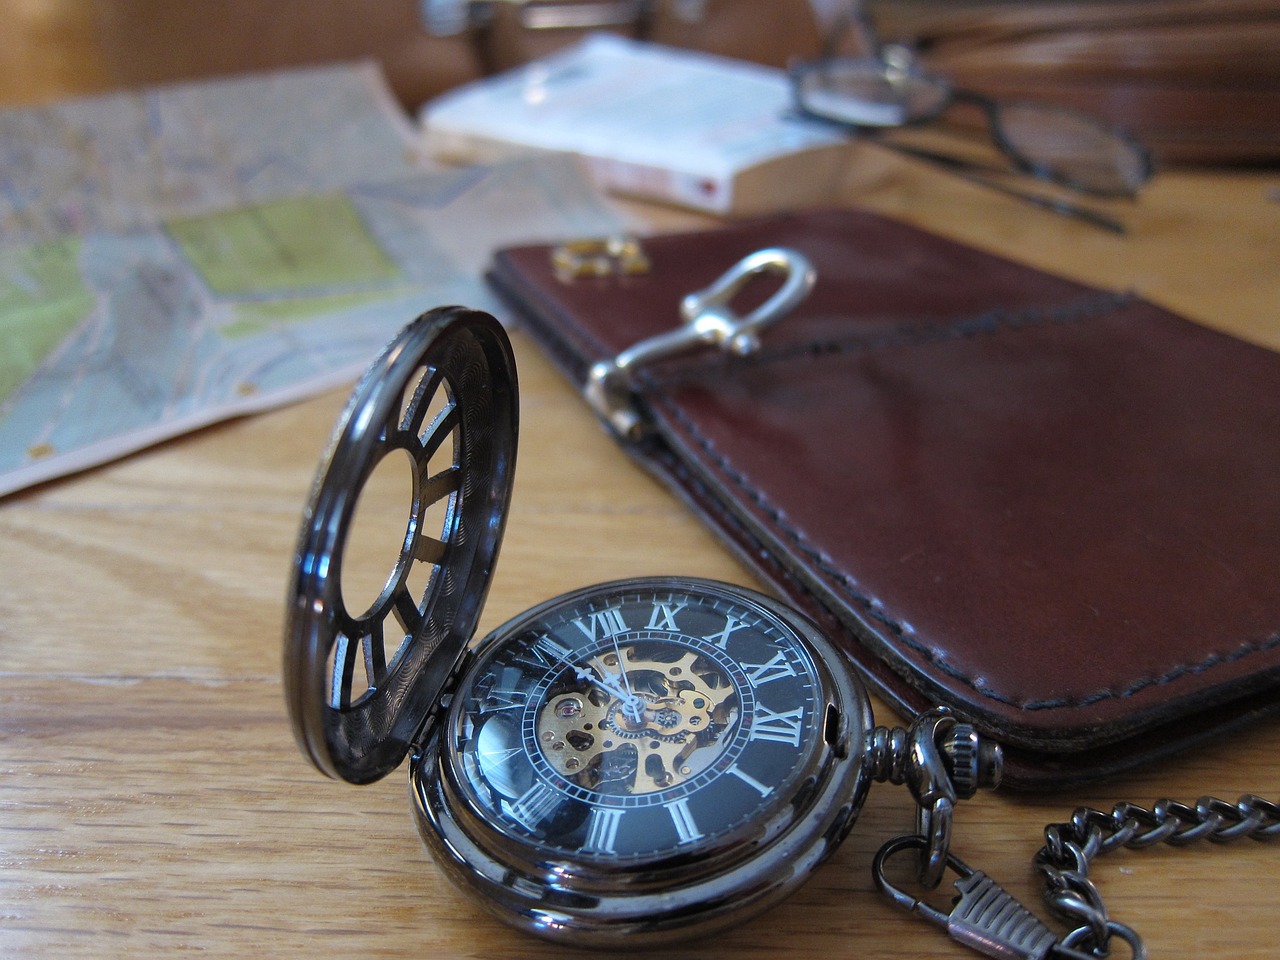 W poszukiwaniu zegarka idealnego dla podróżników: modele z drugą strefą czasową